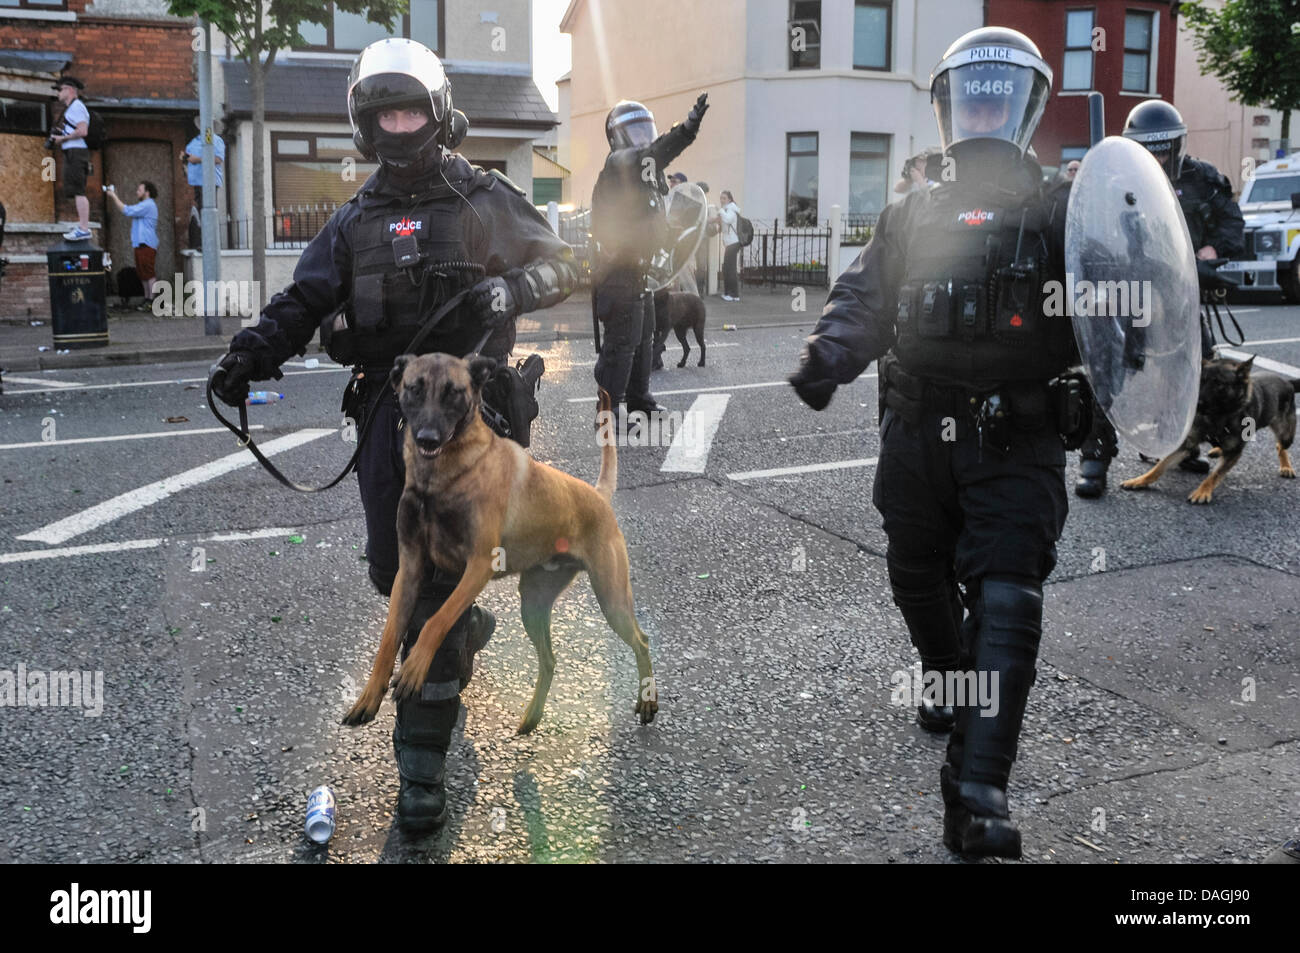 Belfast, Nordirland, 12. Juli 2013 - ein Polizei-Angriff Hund ist brachte in einem Aufruhr Situation Credit: Stephen Barnes/Alamy Live News Stockfoto